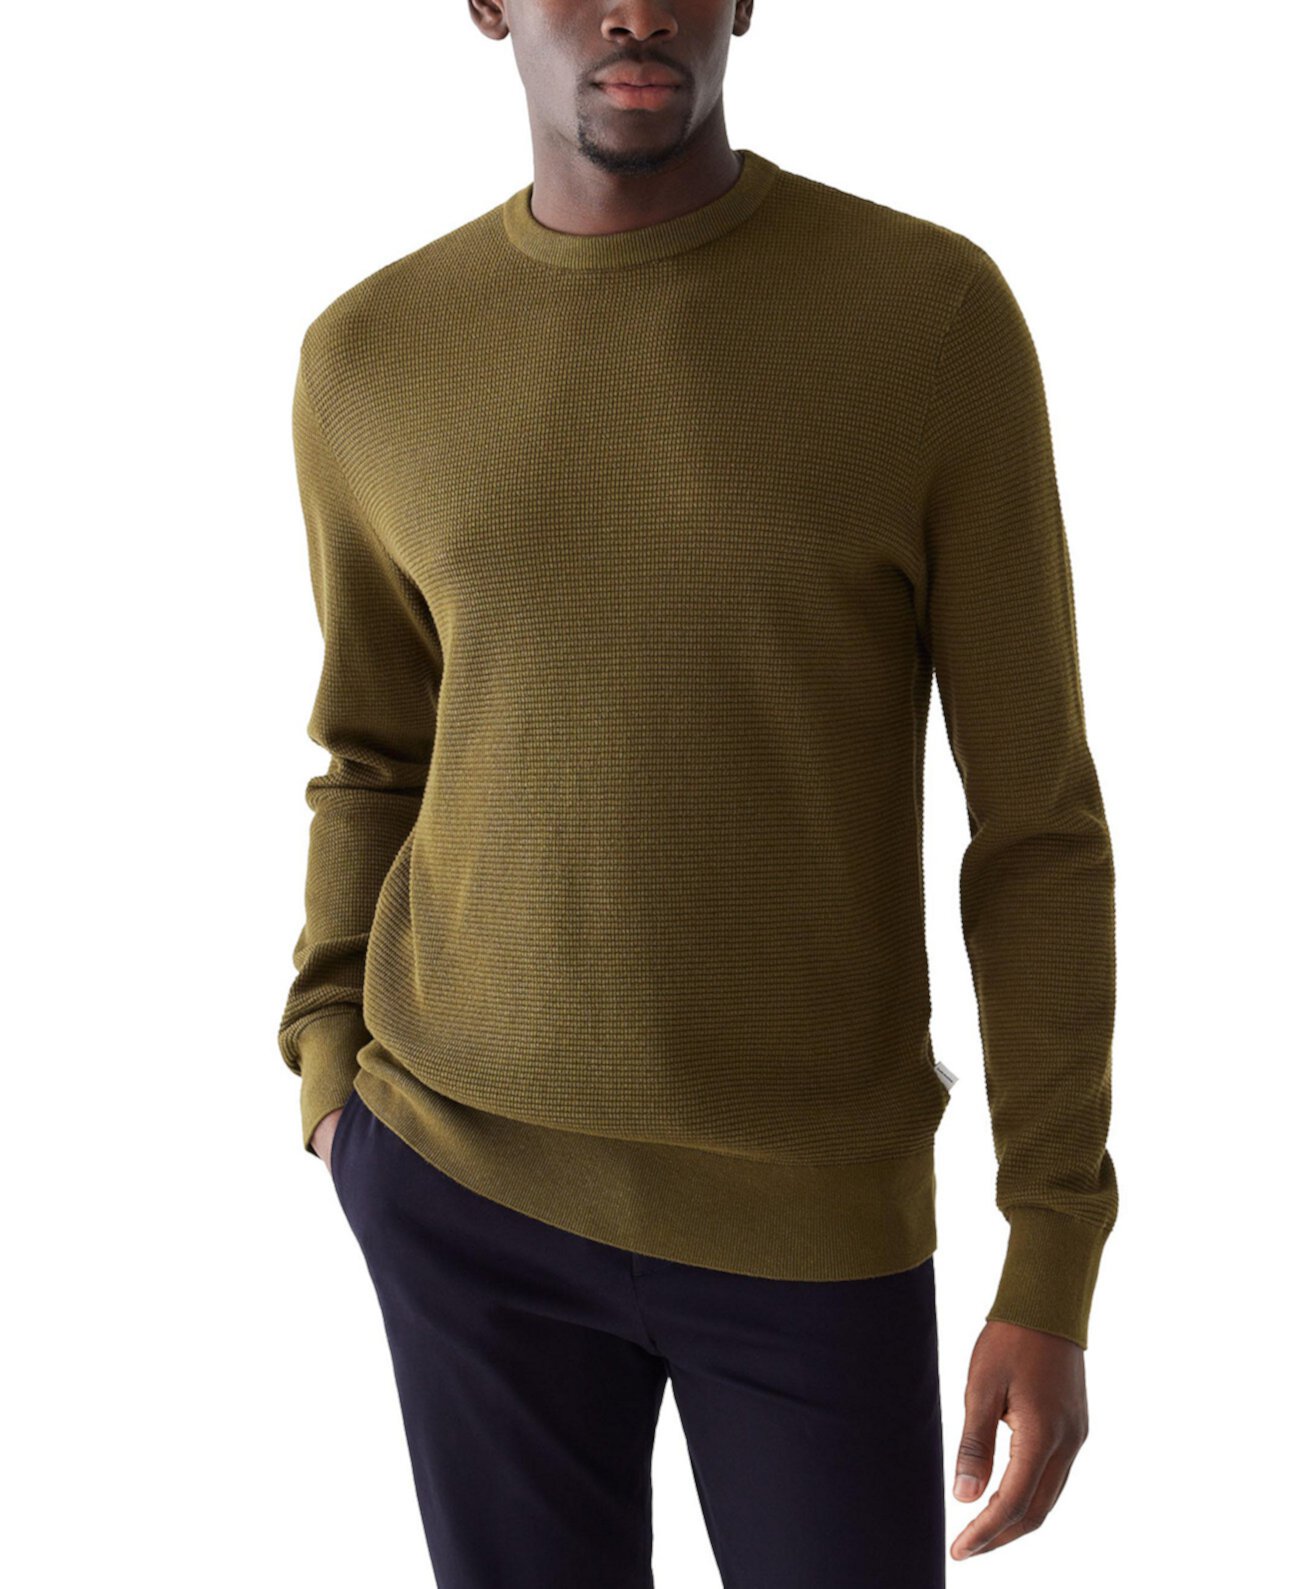 Мужской хлопковый свитер с круглым вырезом и вафельным узором FRANK AND OAK